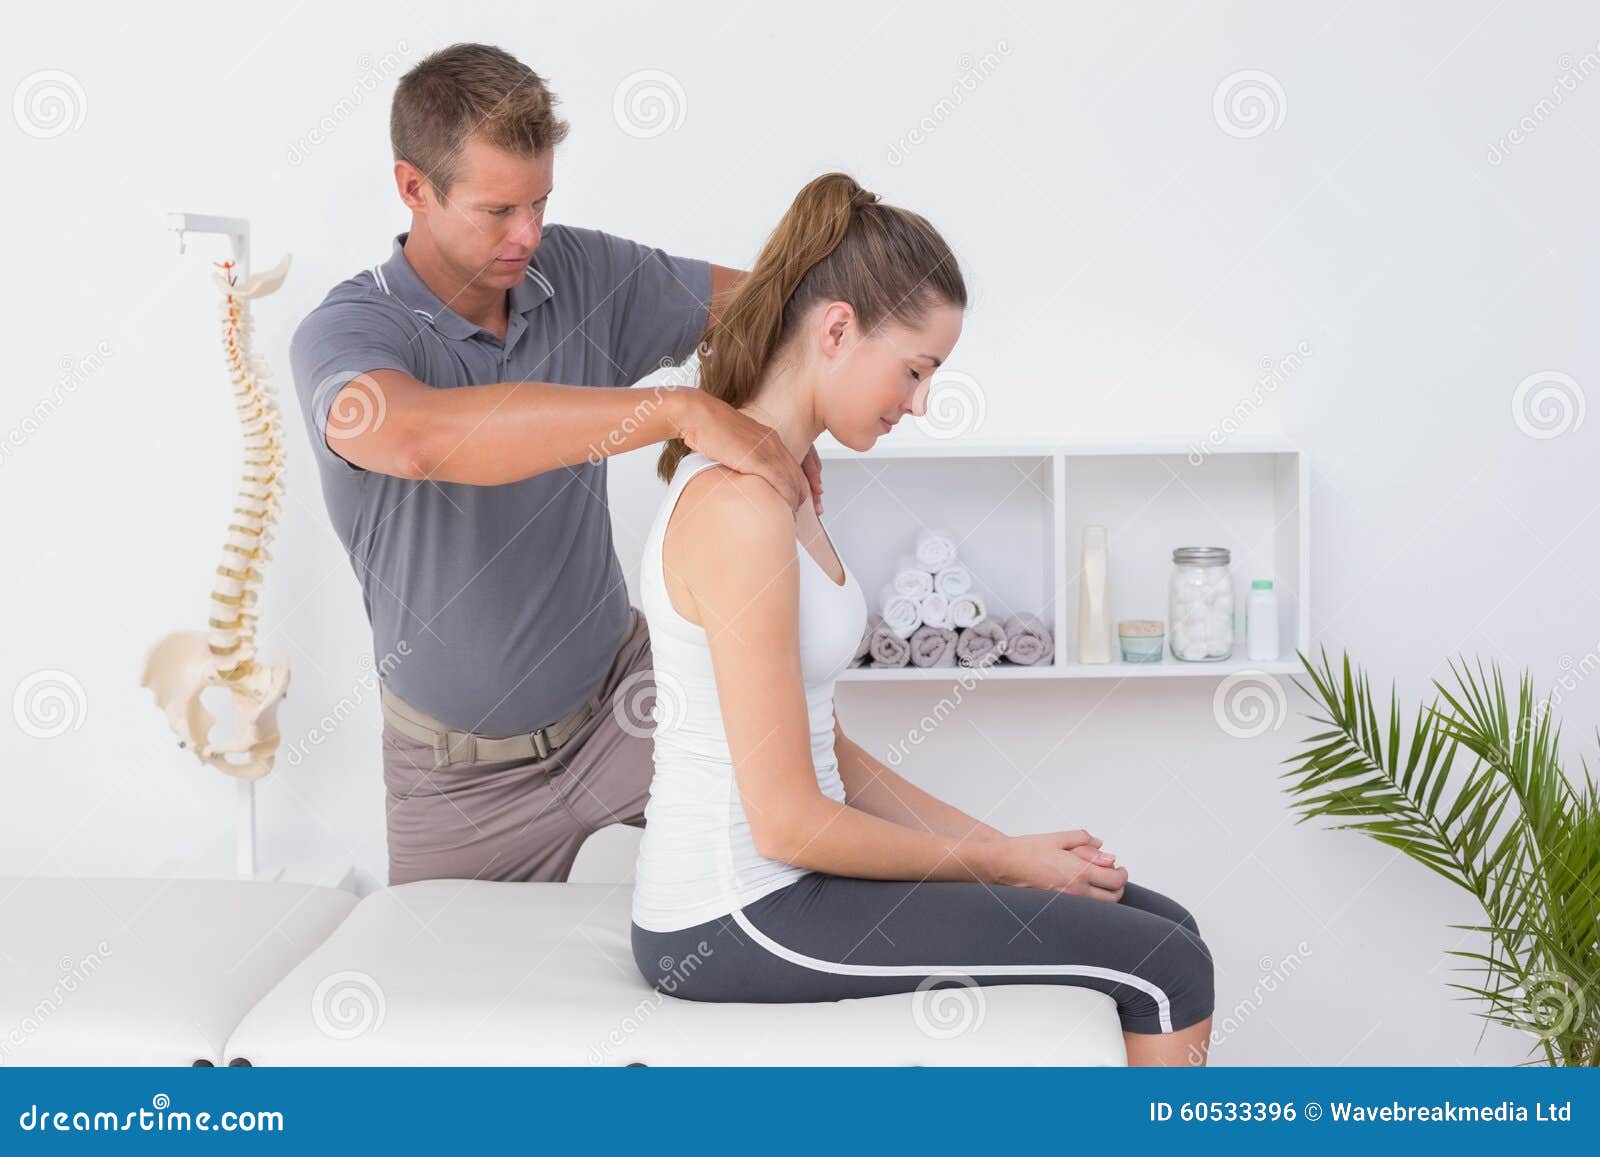 doctor doing neck adjustment